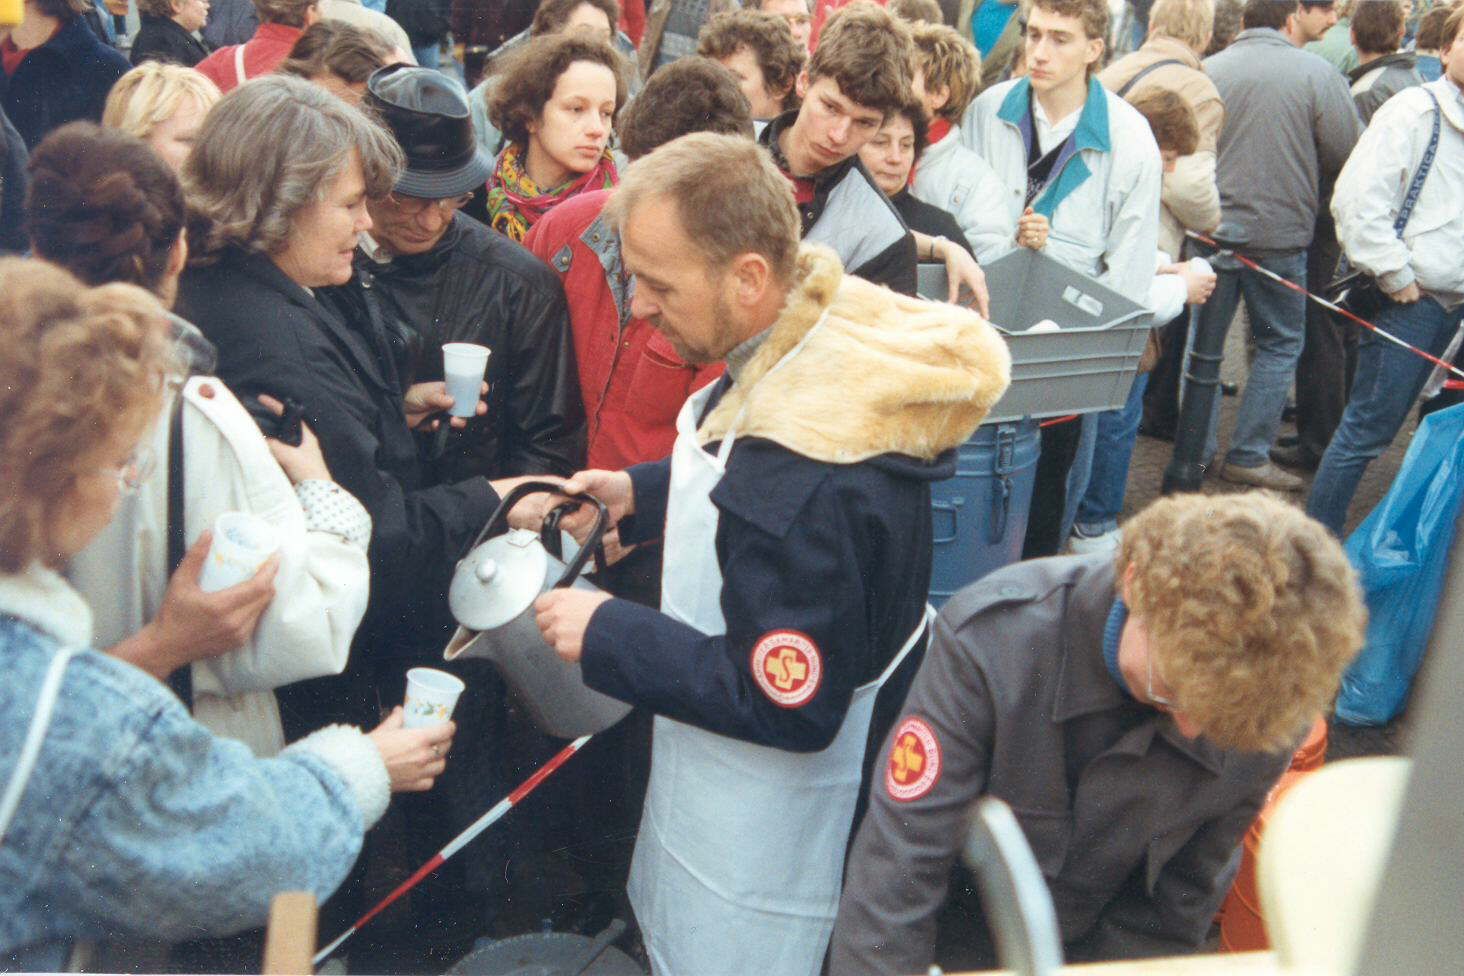 Das Wochenende nach dem Mauerfall 1989 versorgen Samariter tausende Besucher aus der DDR in Westberlin. Bis Sonntagabend wurden mehr als 28.000 Portionen Heißgetränke ausgegeben.